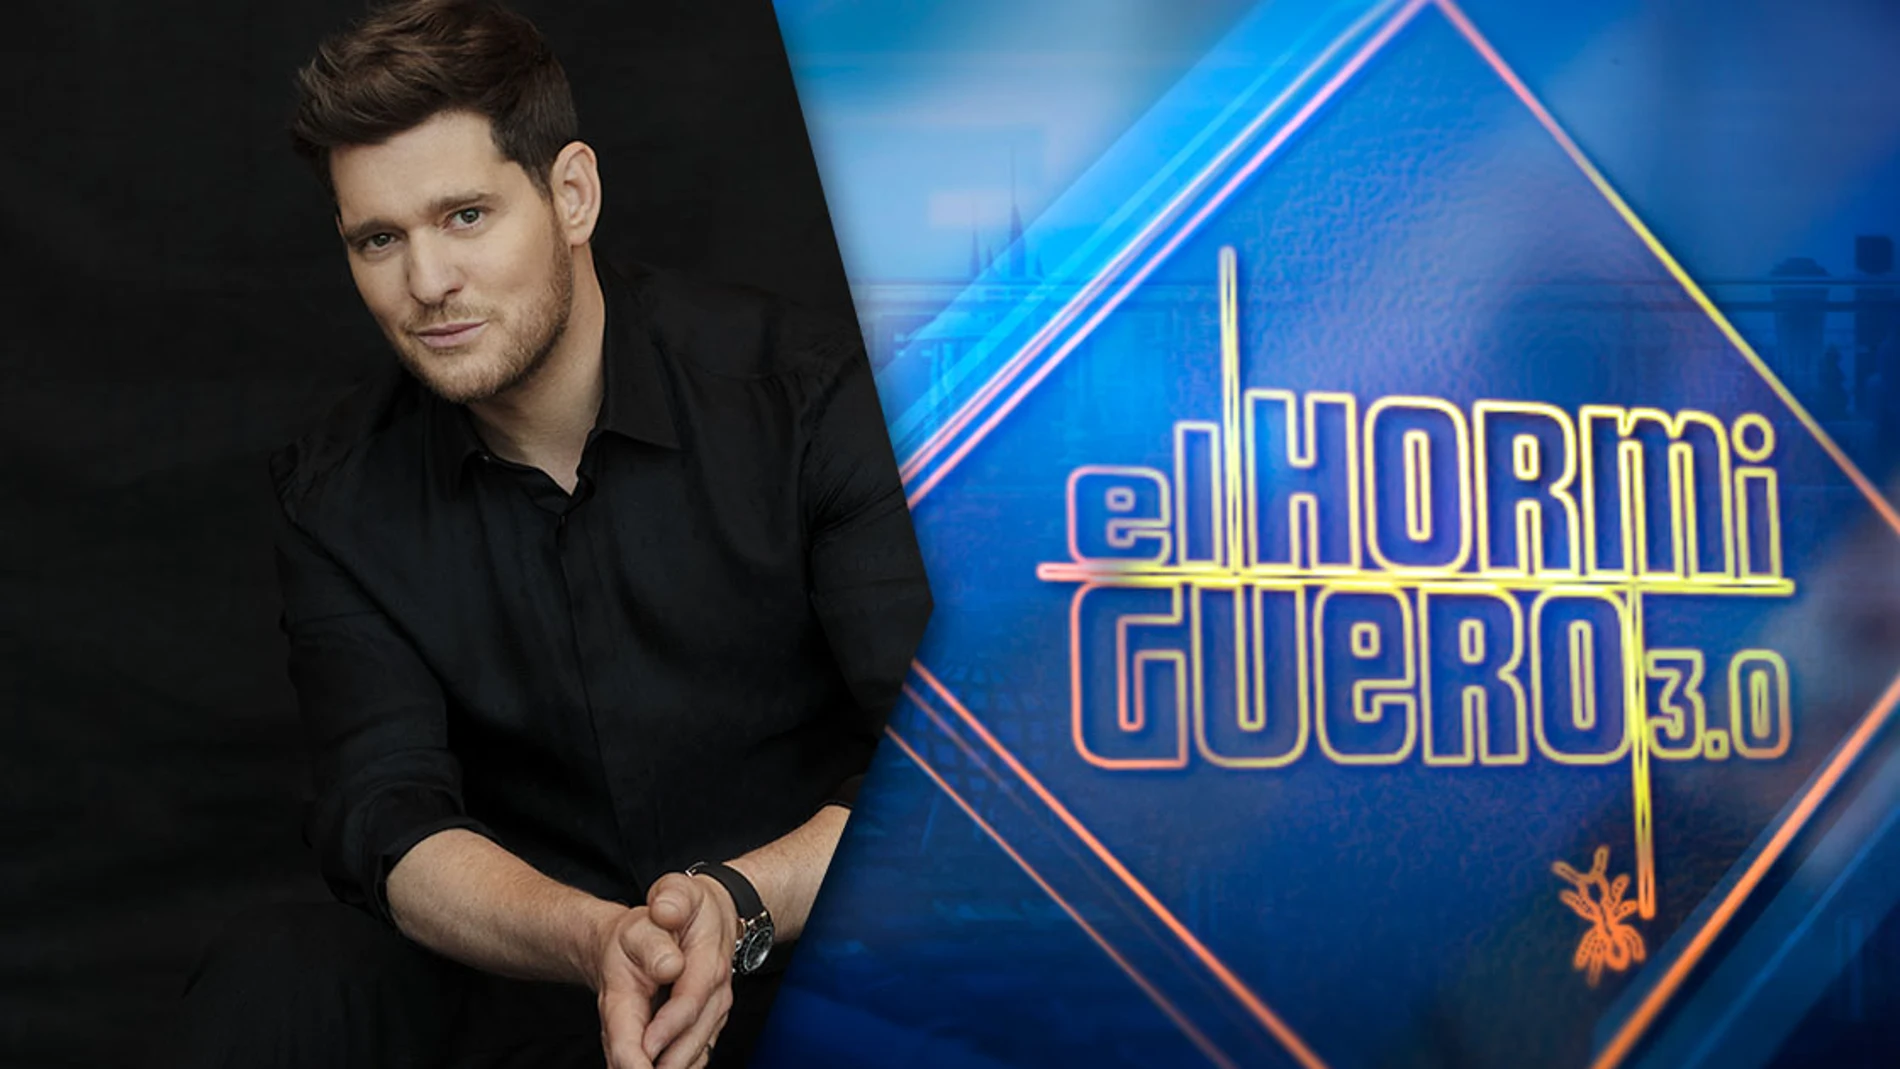 Esta noche, el cantante Michael Bublé presenta su último disco en ‘El Hormiguero 3.0’